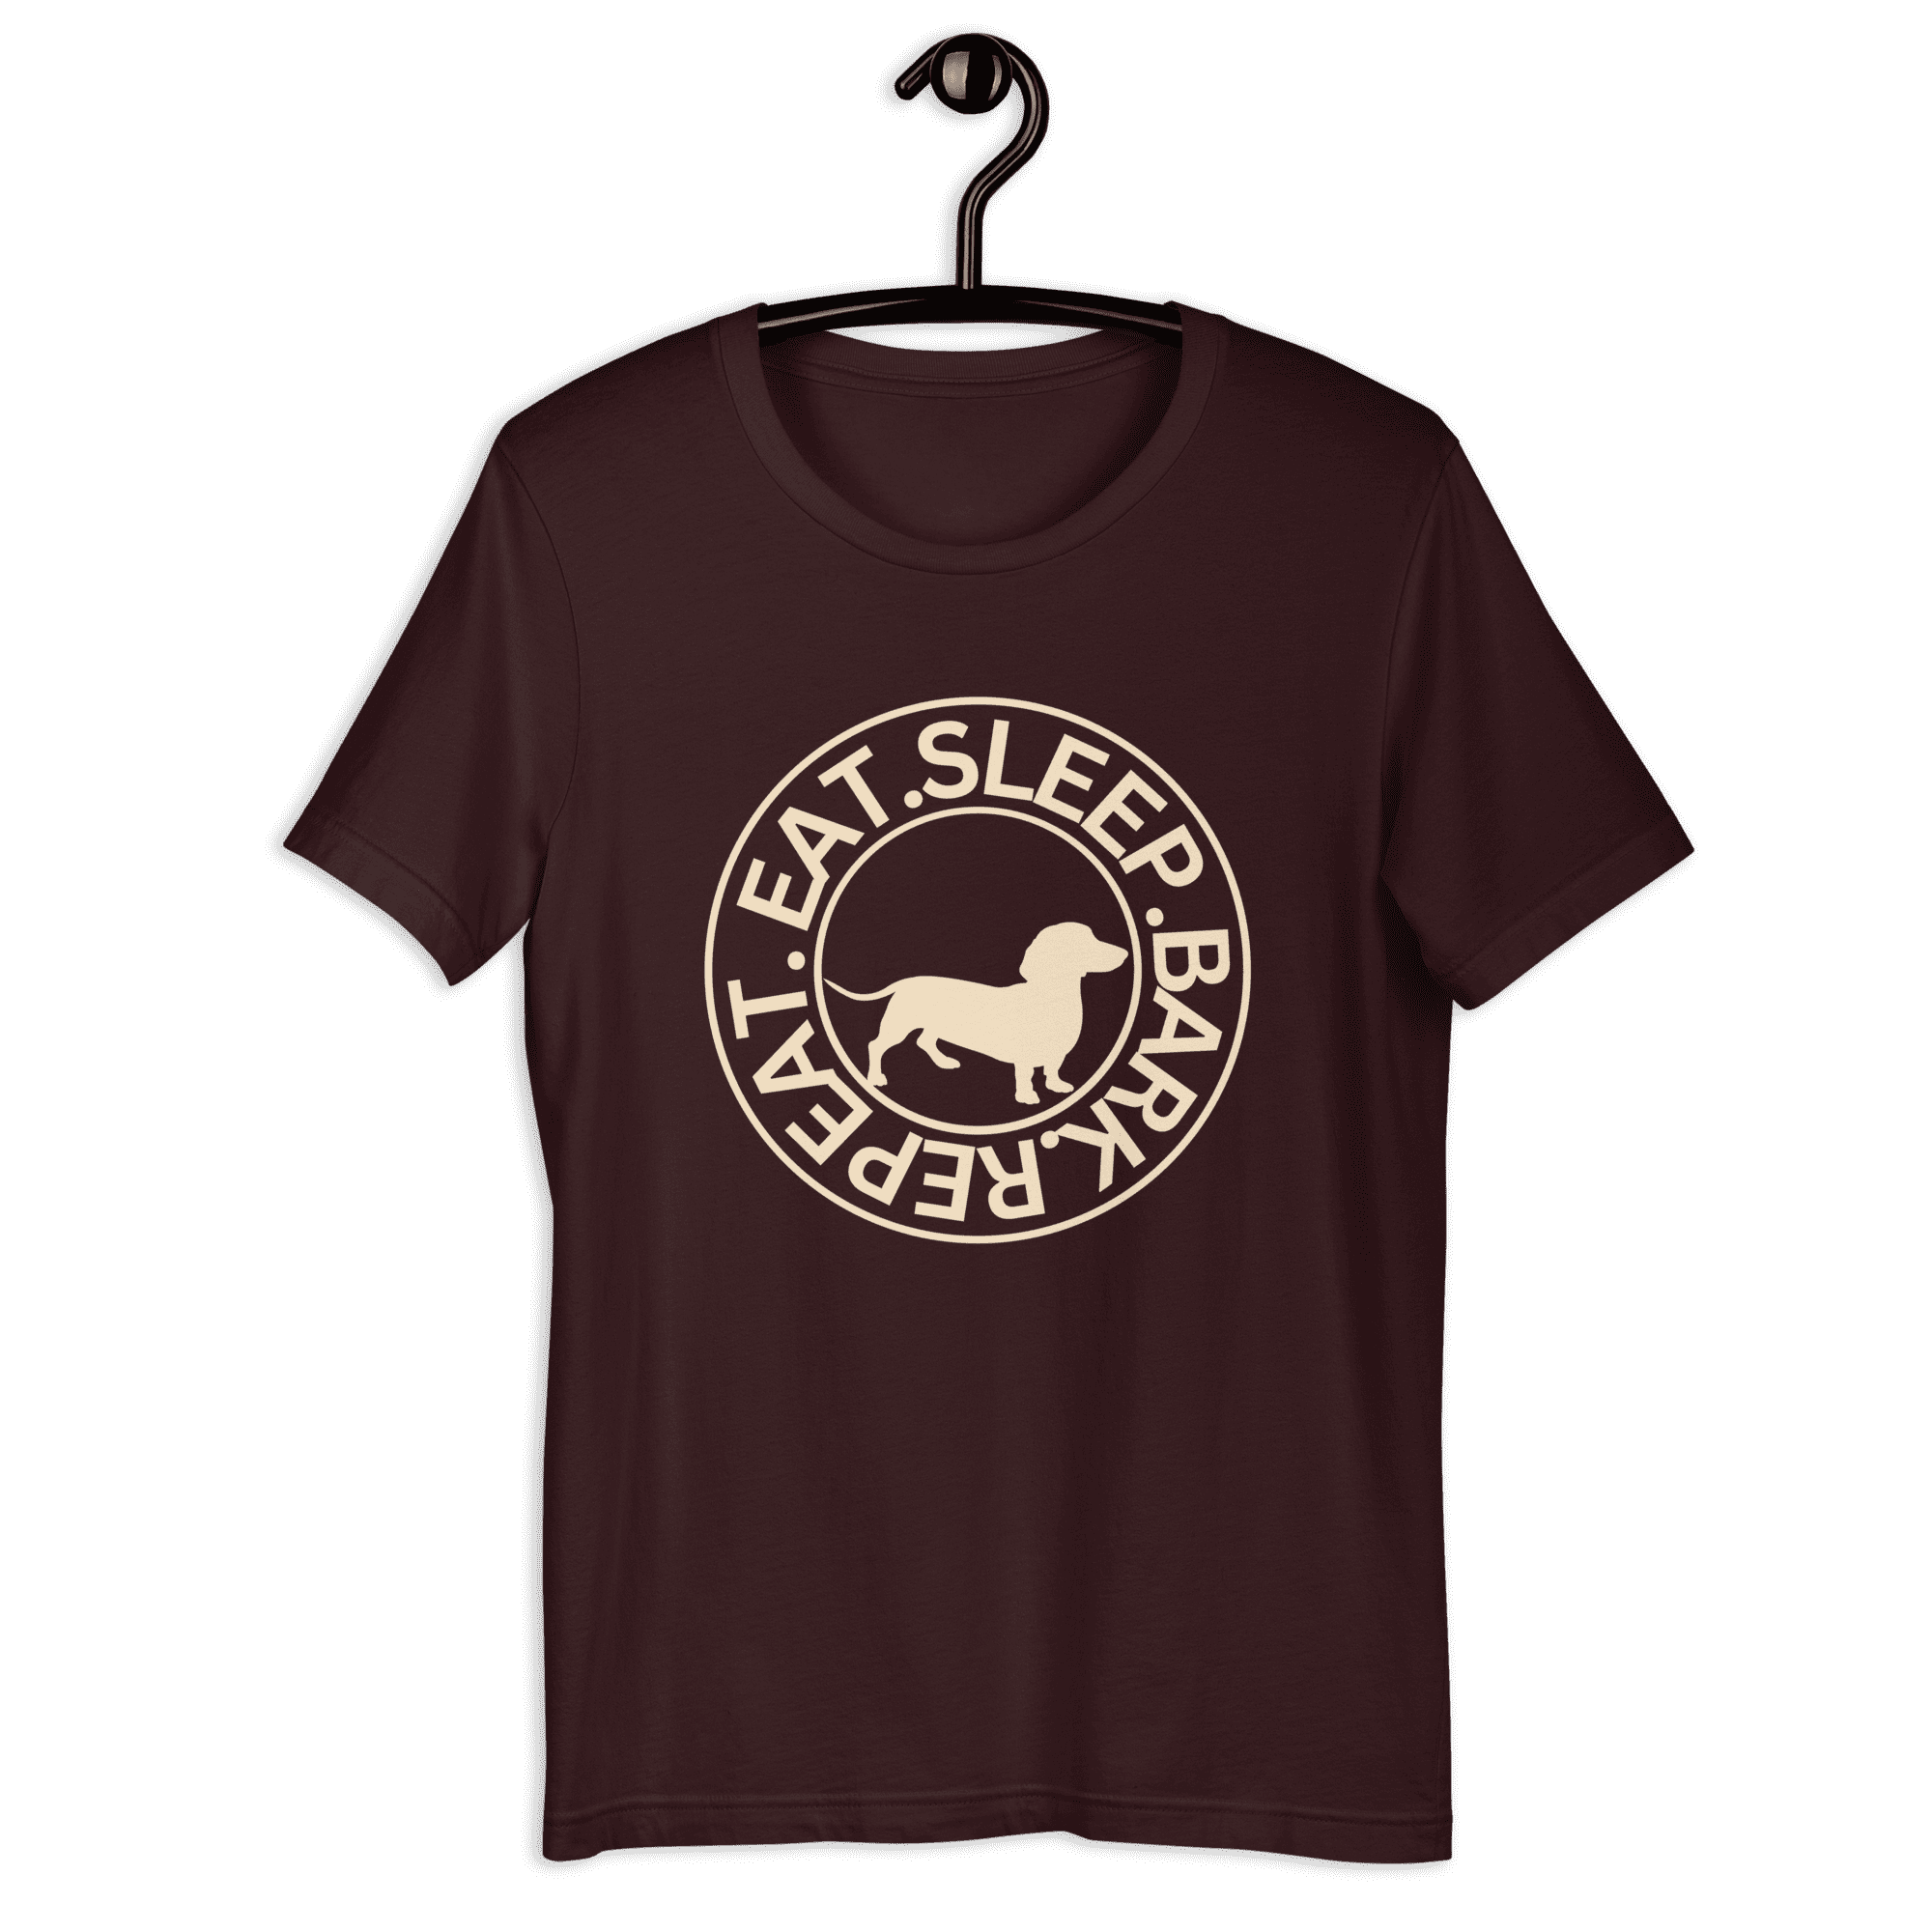 Eat Sleep Bark Repeat Transylvanian Hound (Erdélyi Kopó) Unisex T-Shirt. Ox Blood